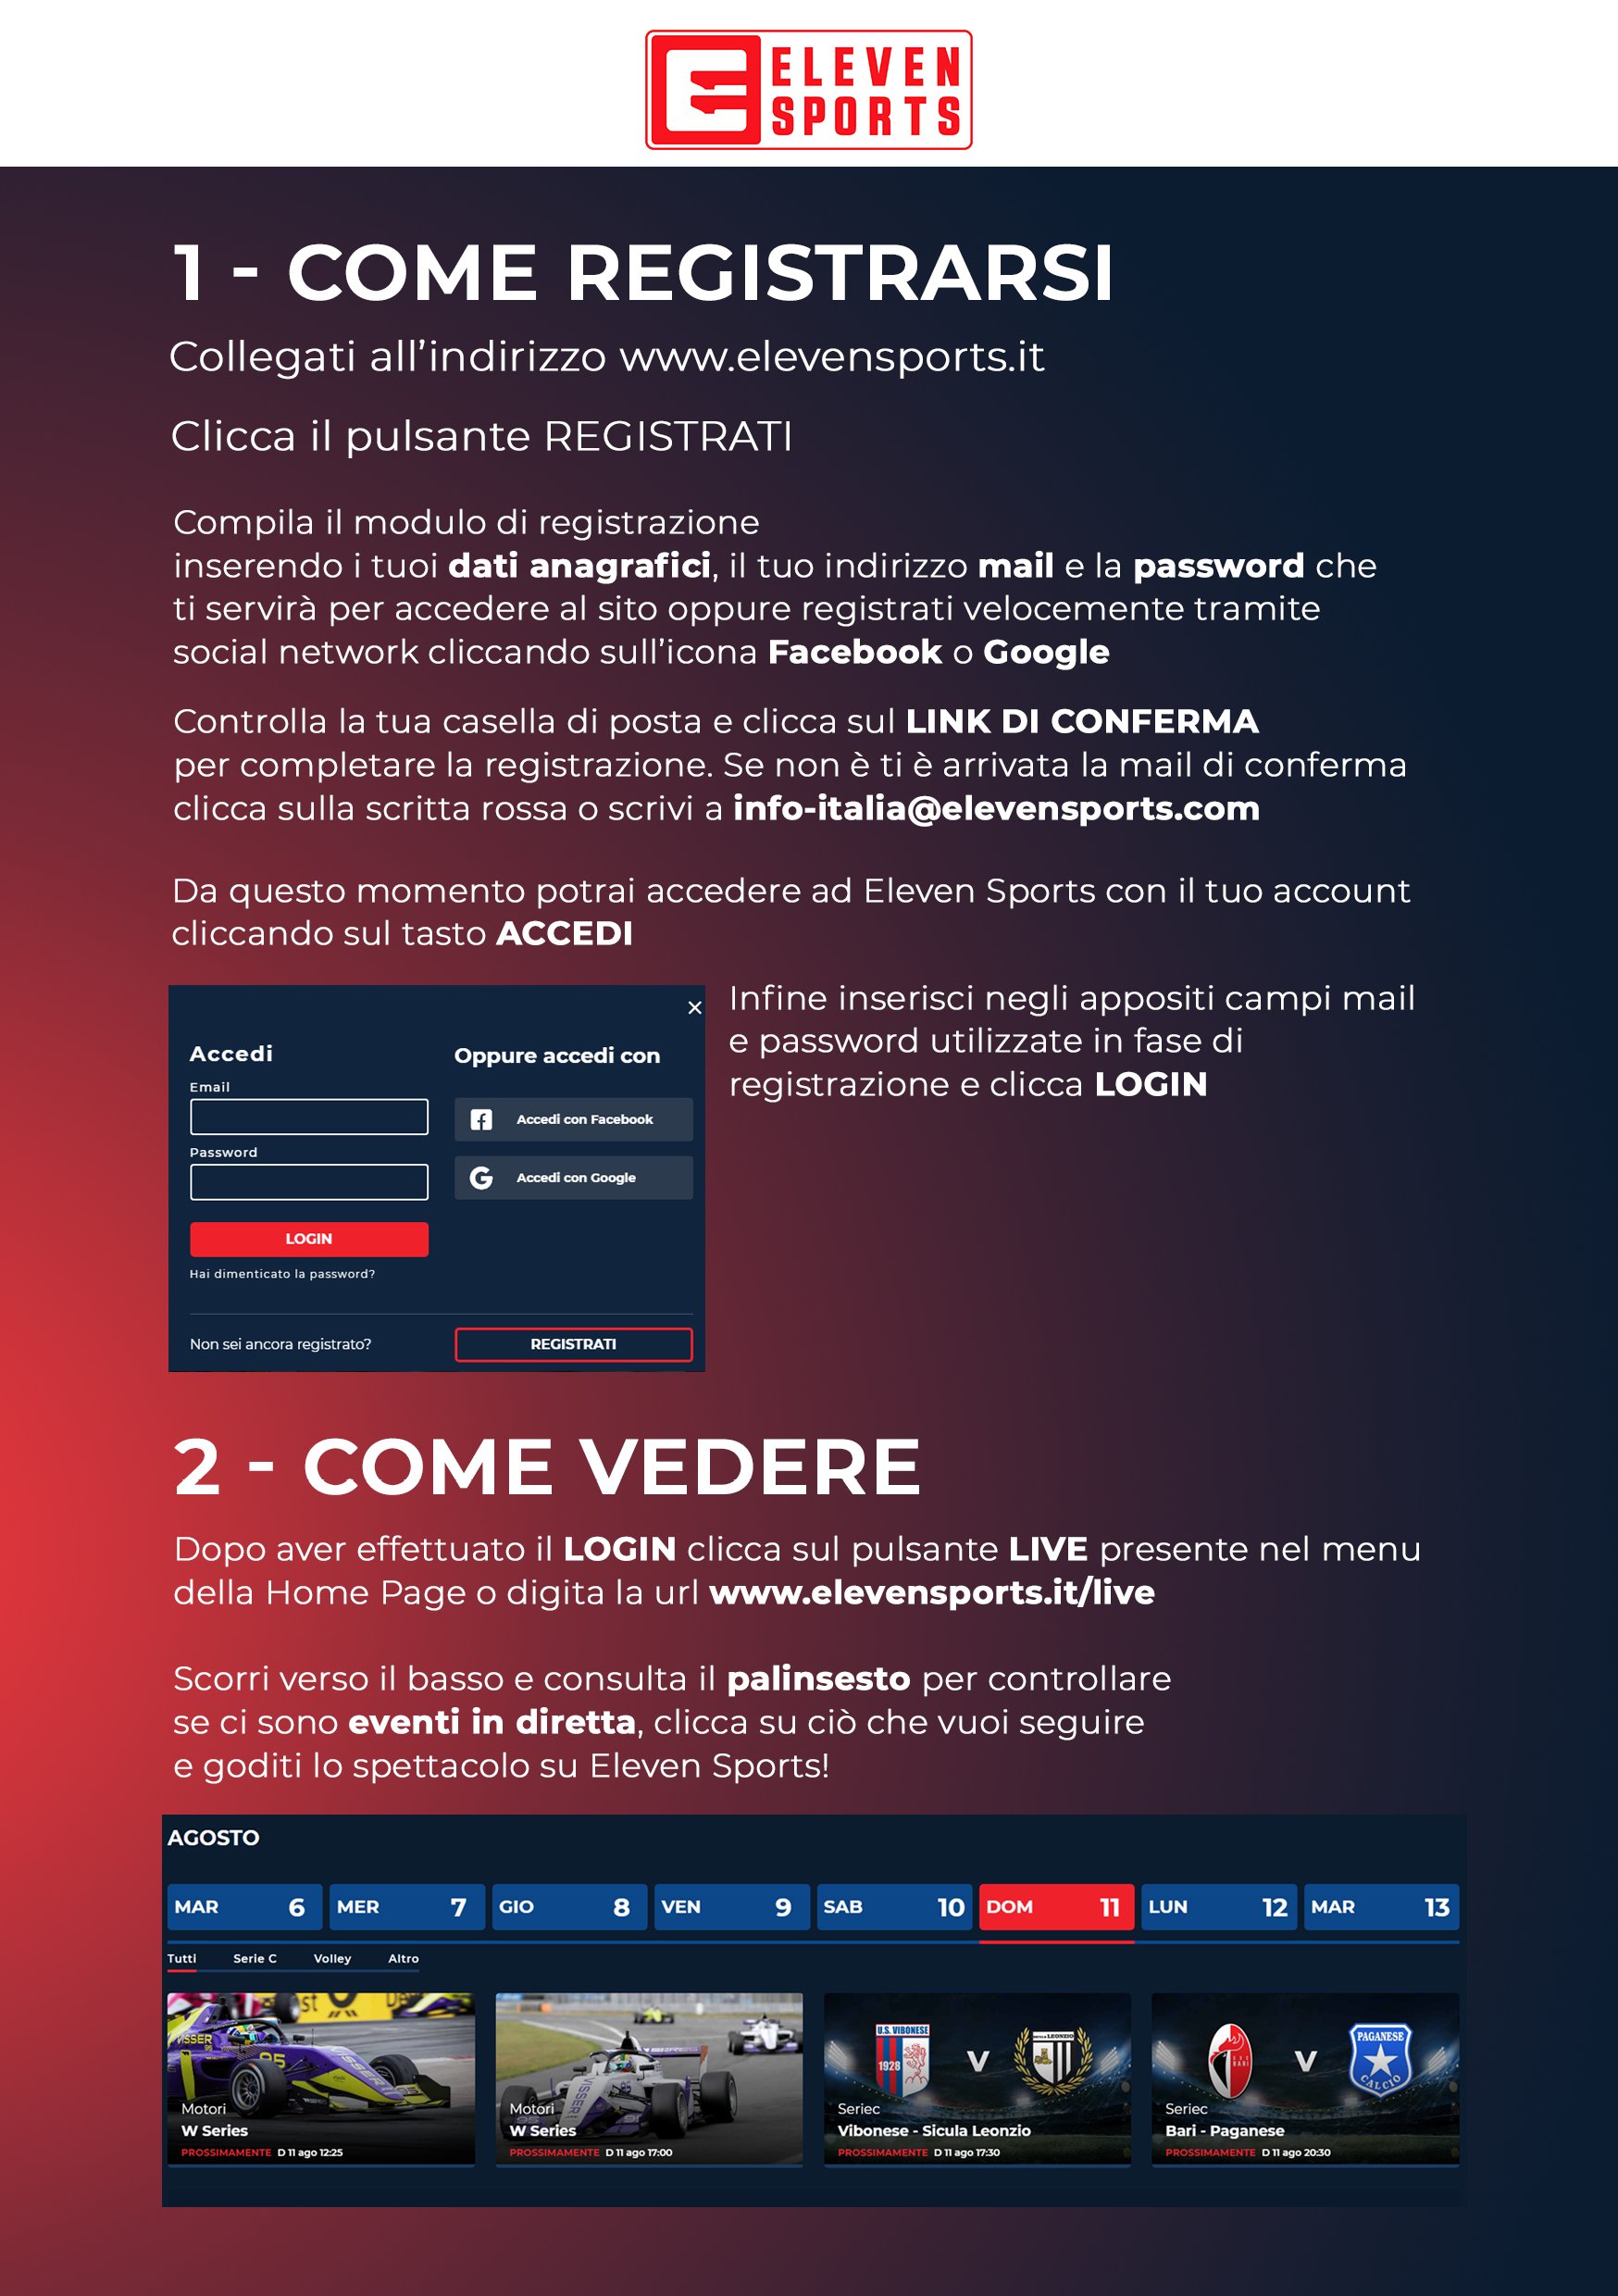 Serie C TV, Coppa Italia 14 Agosto - Programma e Telecronisti Eleven Sports